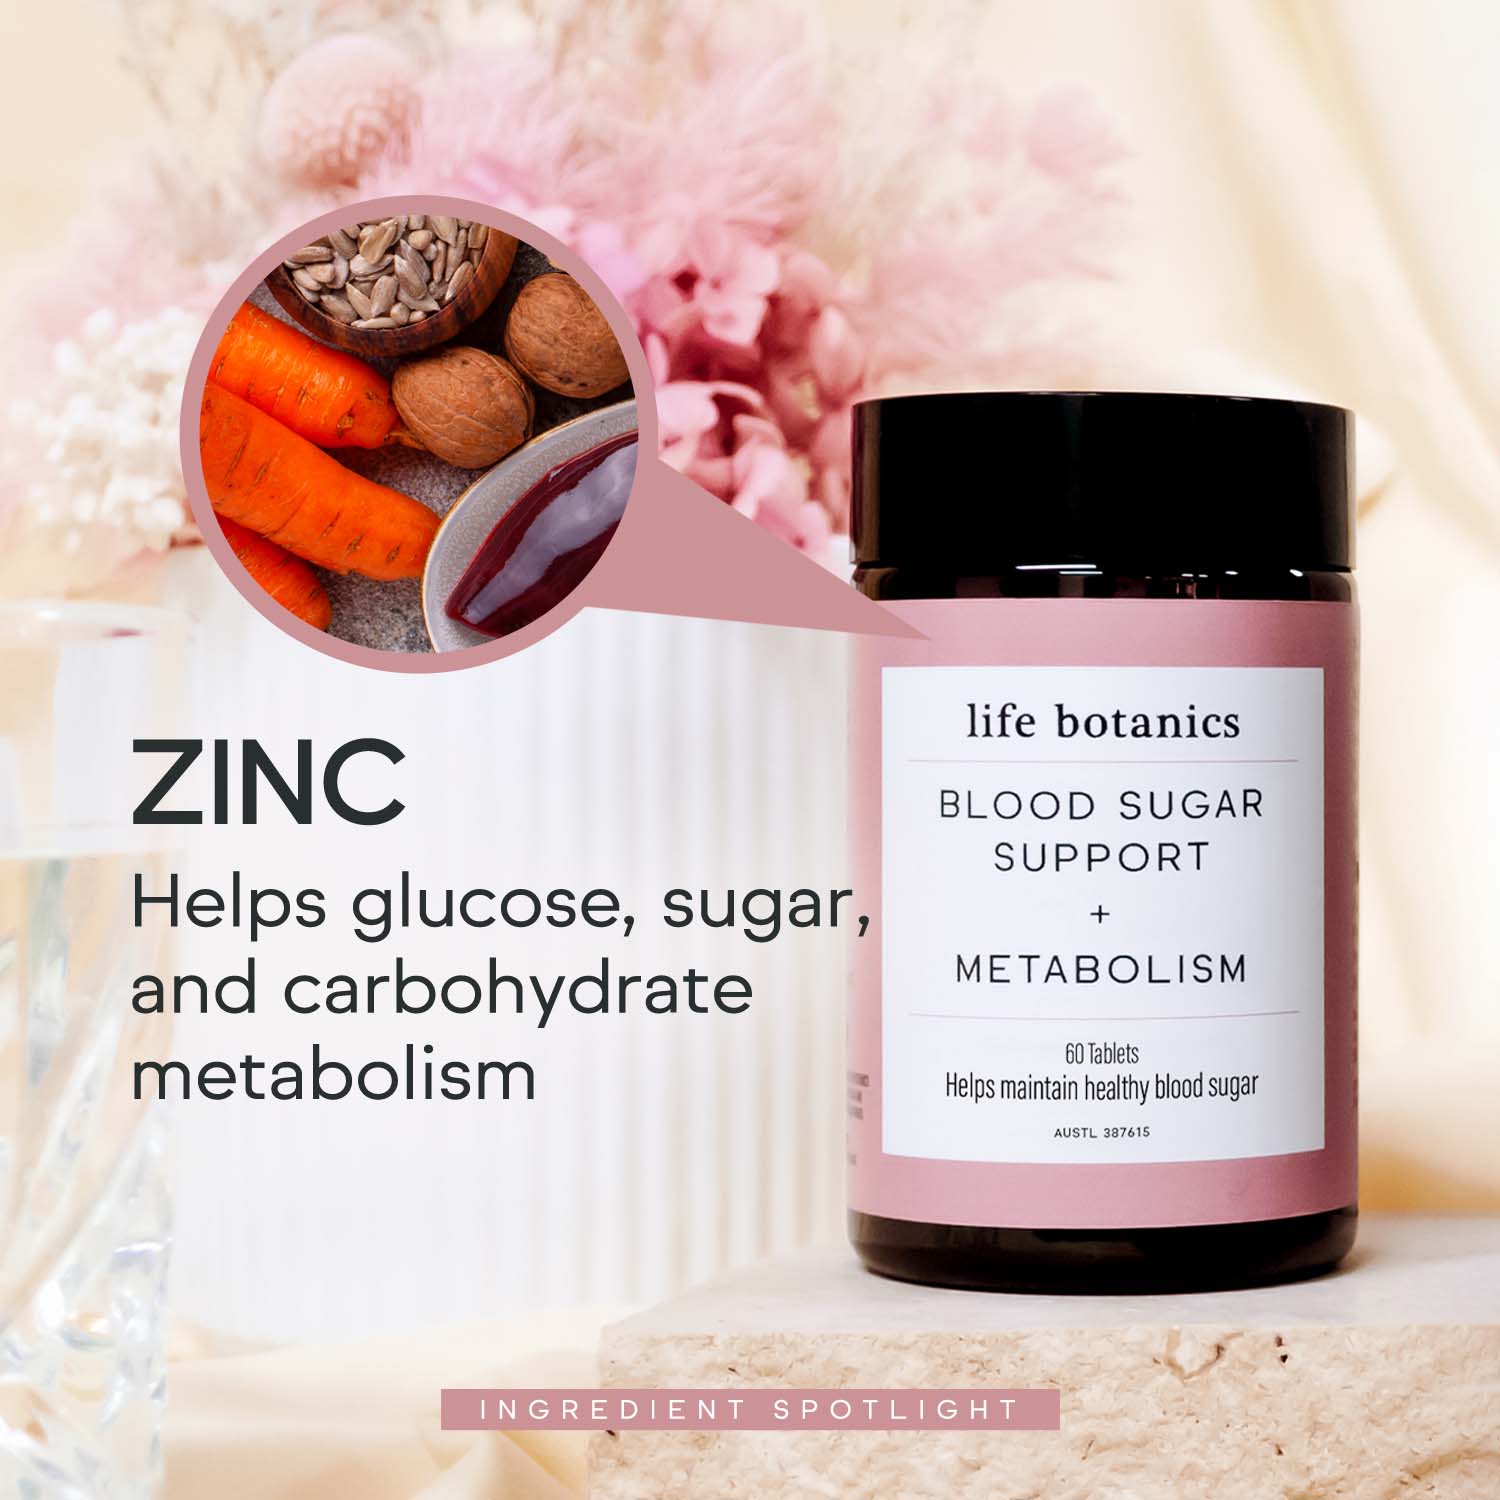 Life Botanics Blood Sugar Support + Metabolism Tablets